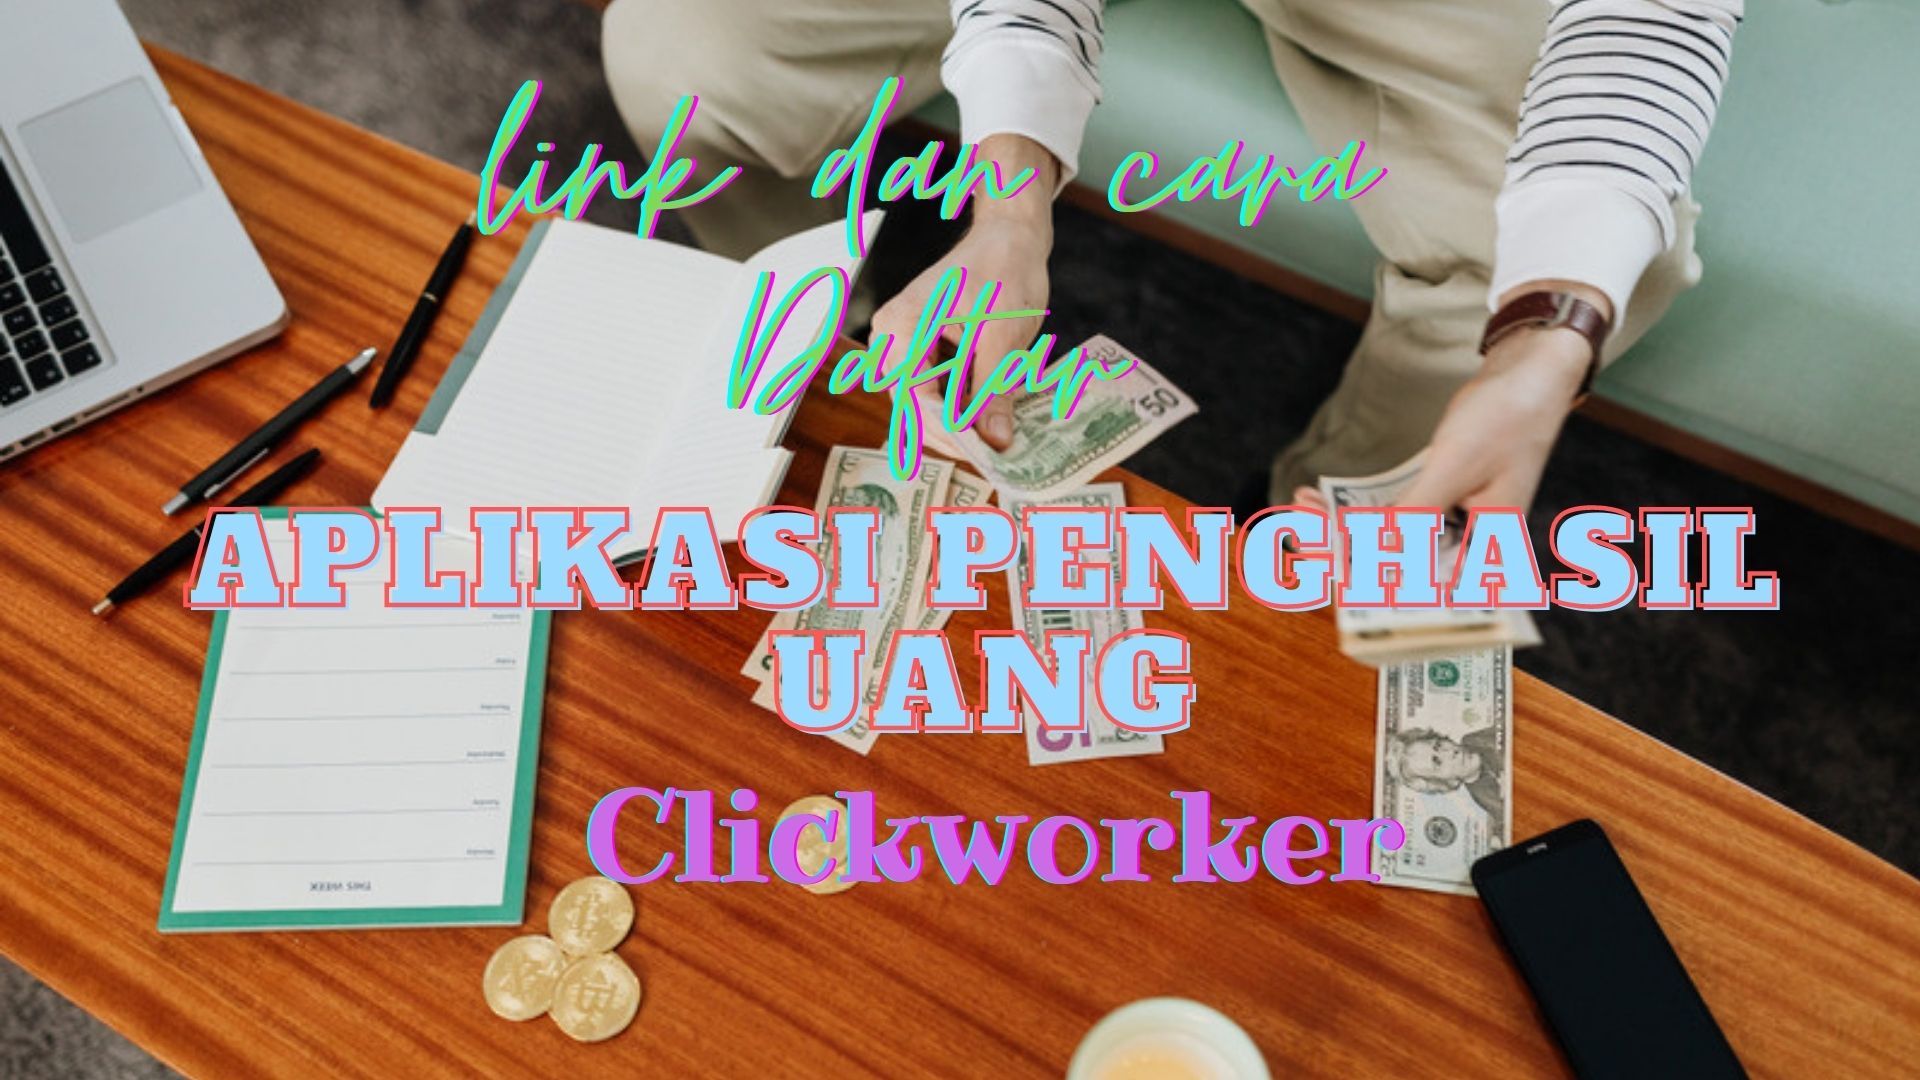 Link dan Cara Daftar Clickworker Situs Aplikasi Penghasil Uang dari Rumah yang Terbukti Membayar
(ilustrasi)